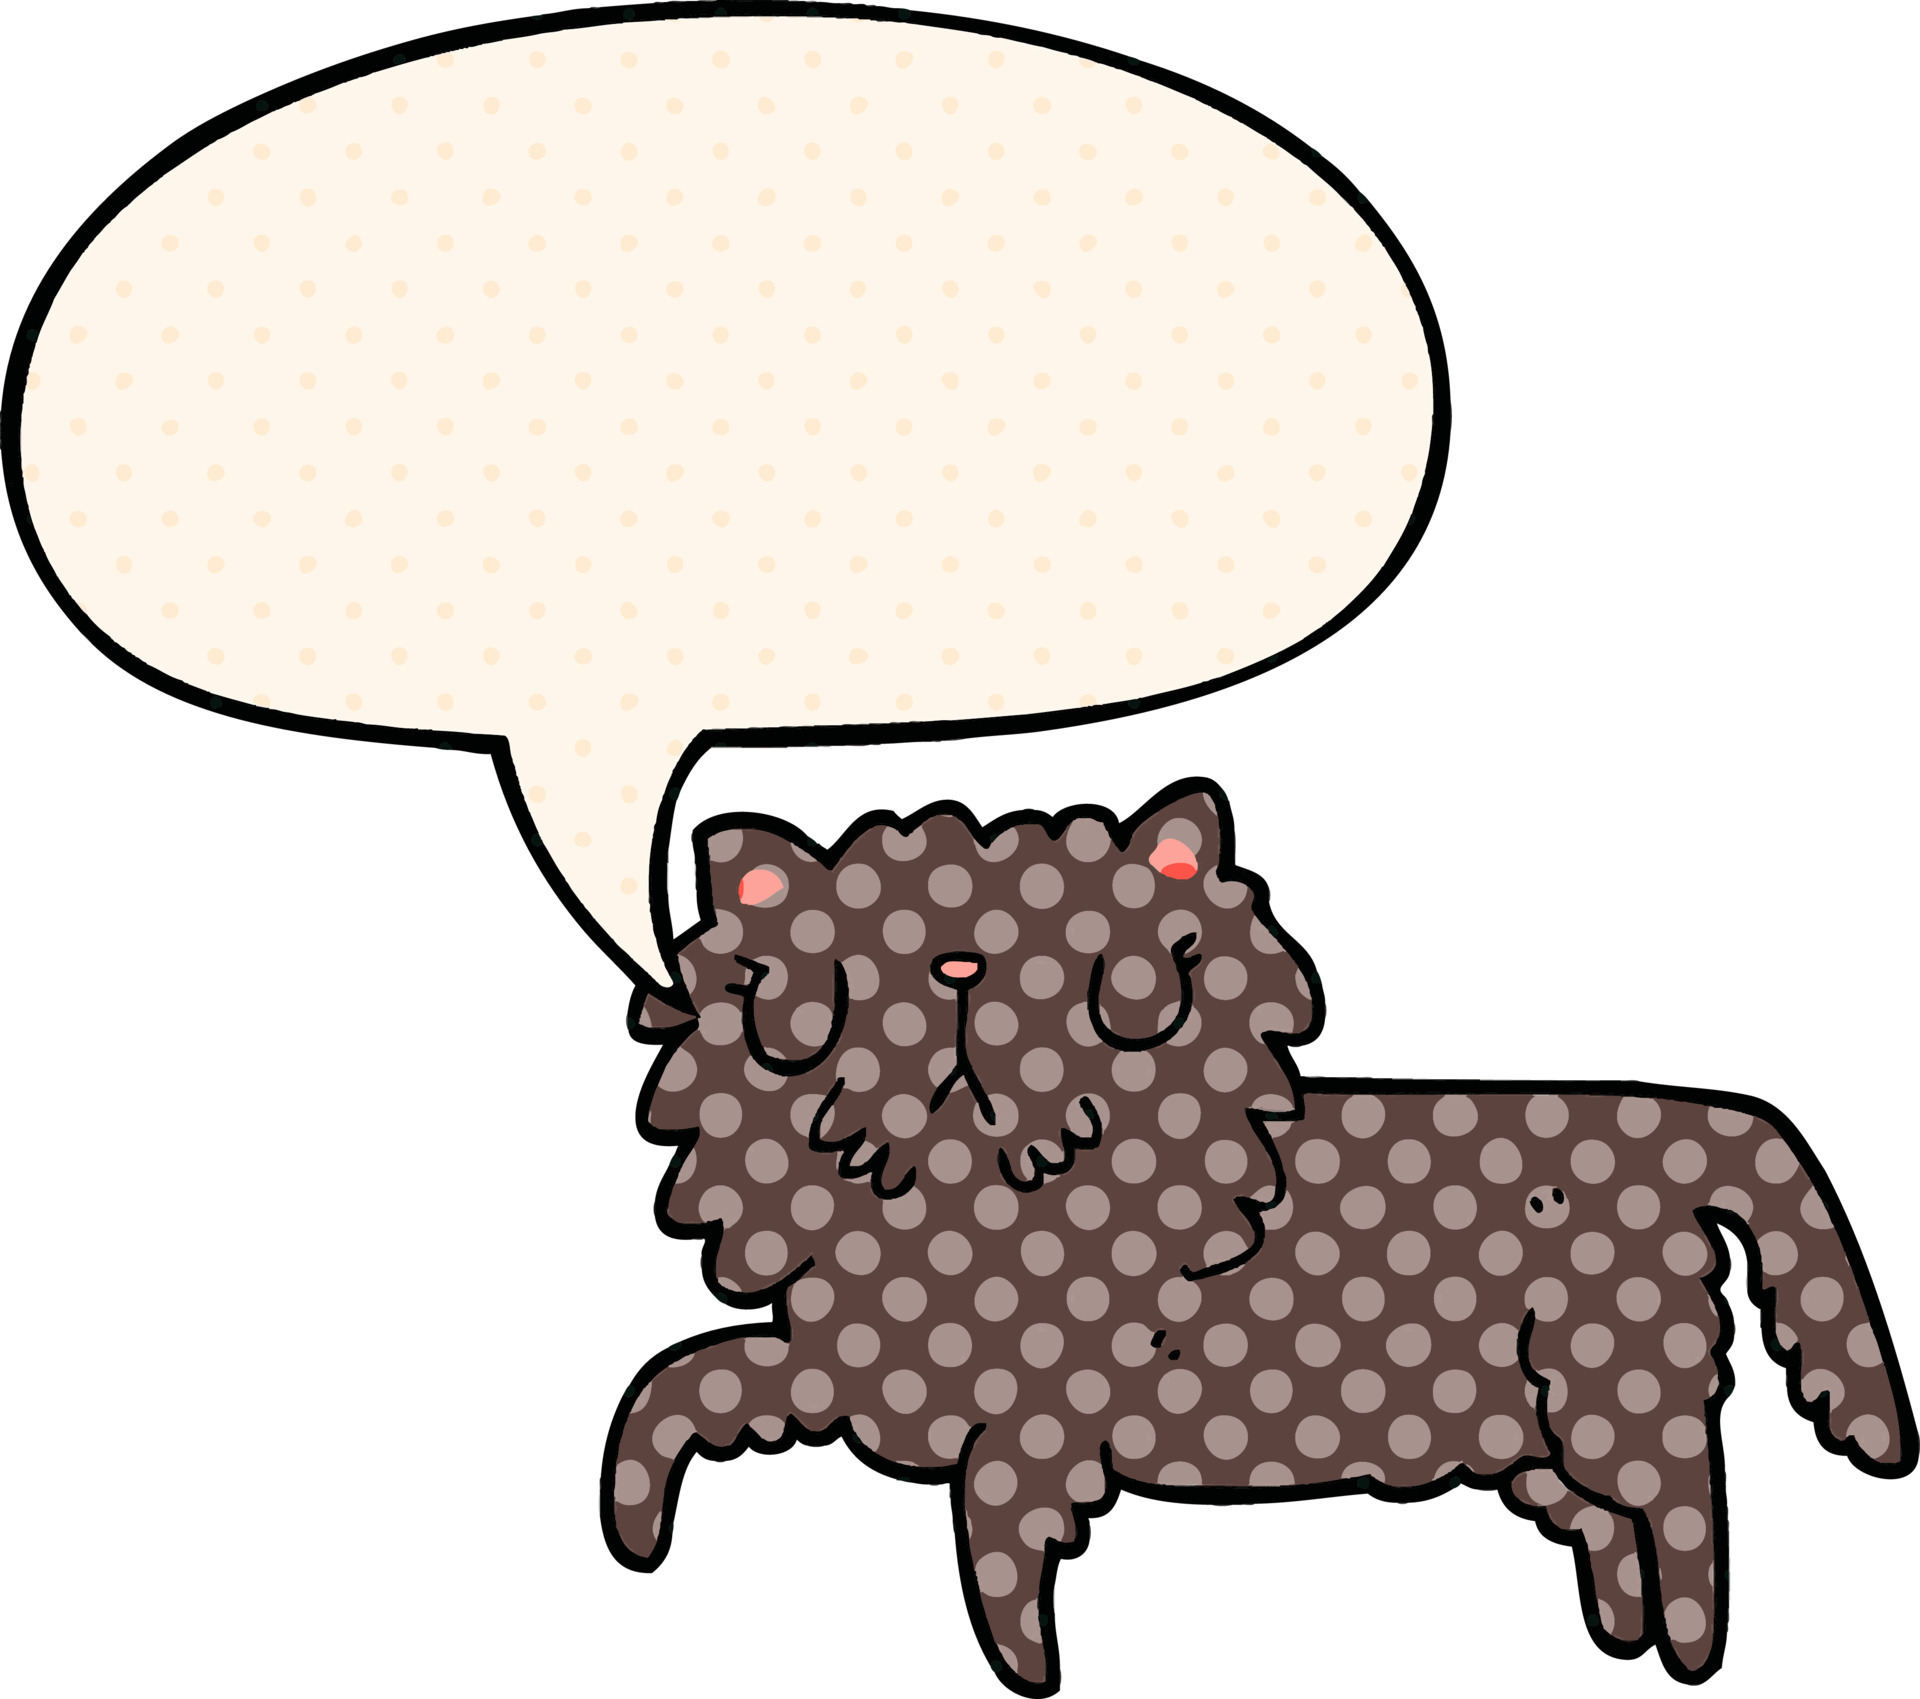 gato de desenho animado e bolha de fala no estilo de quadrinhos 8869098  Vetor no Vecteezy